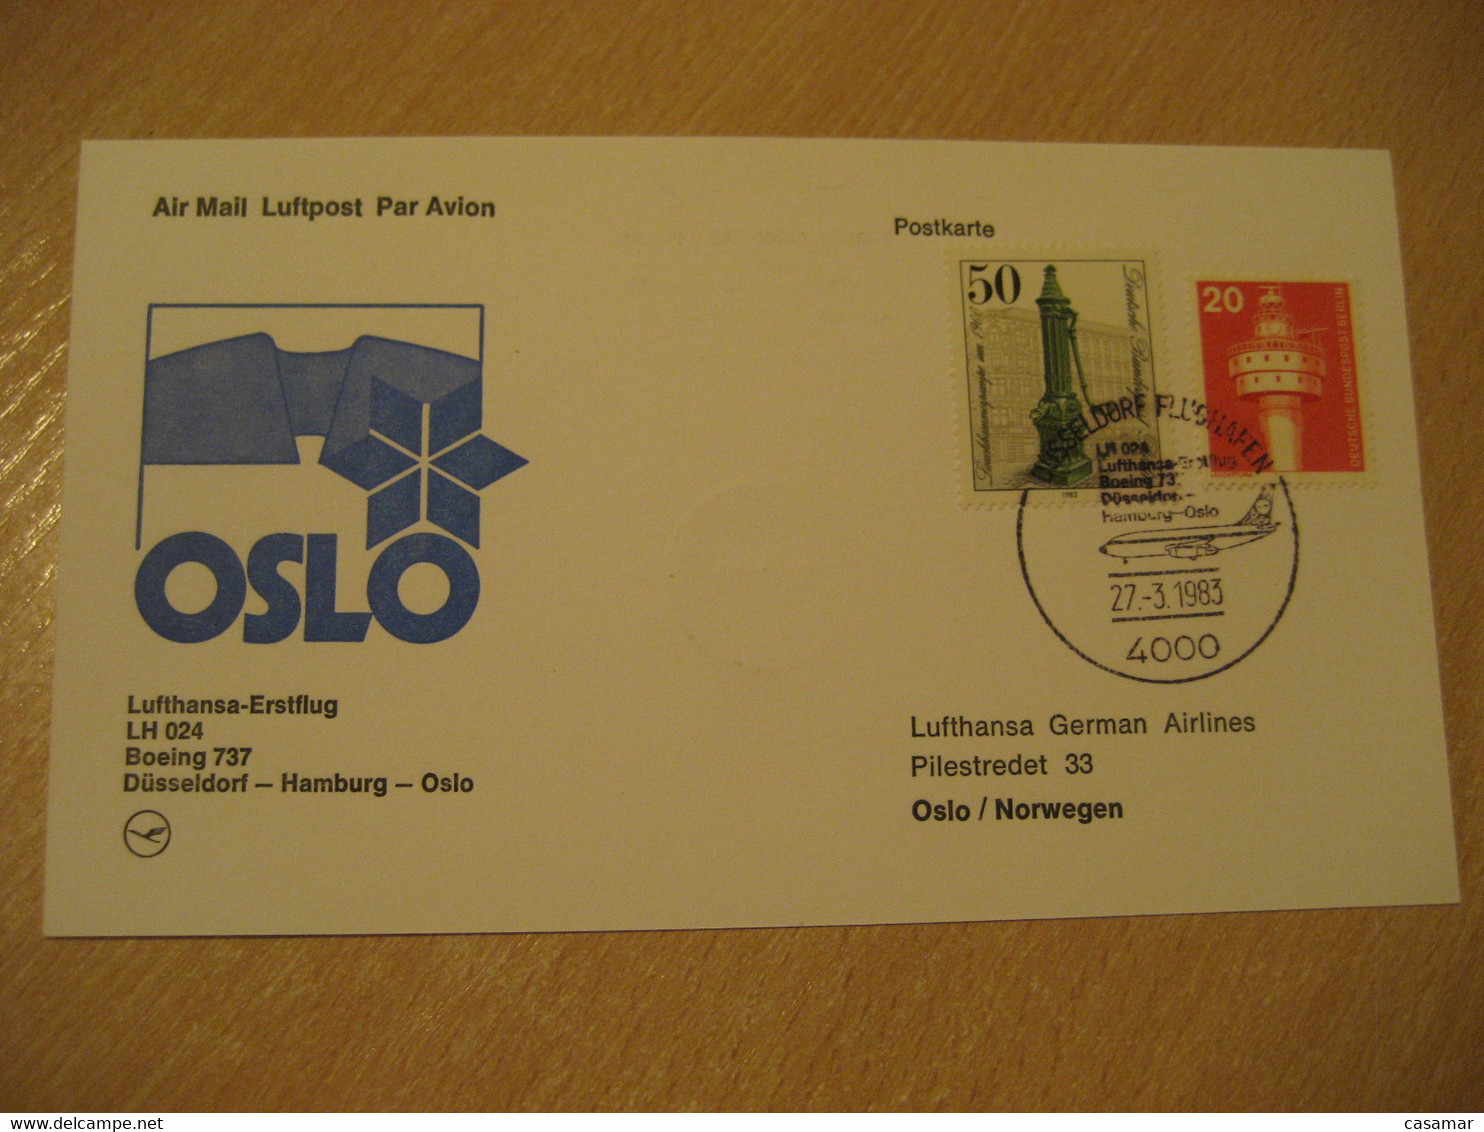 OSLO Dusseldorf Hamburg 1983 Lufthansa Airlines Airline Boeing 737 First Flight Black Cancel Card NORWAY GERMANY - Briefe U. Dokumente